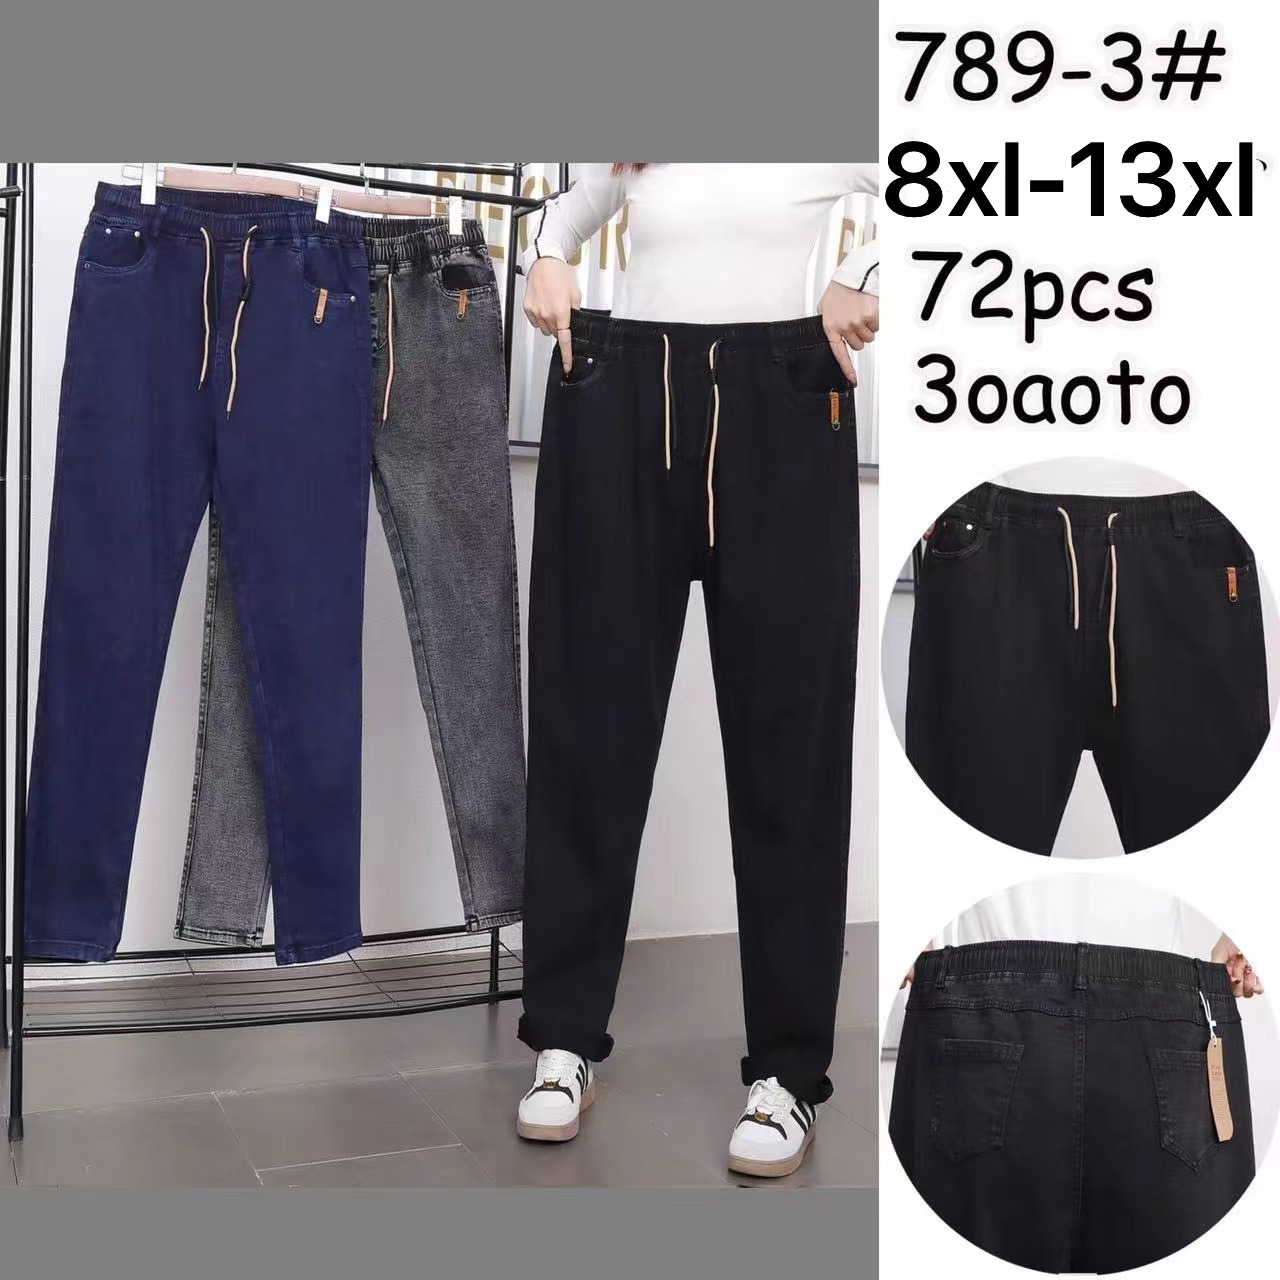 Жіночі стрейчеві джинси БАТАЛ 789-3 (в уп. один колiр) весна-осінь.